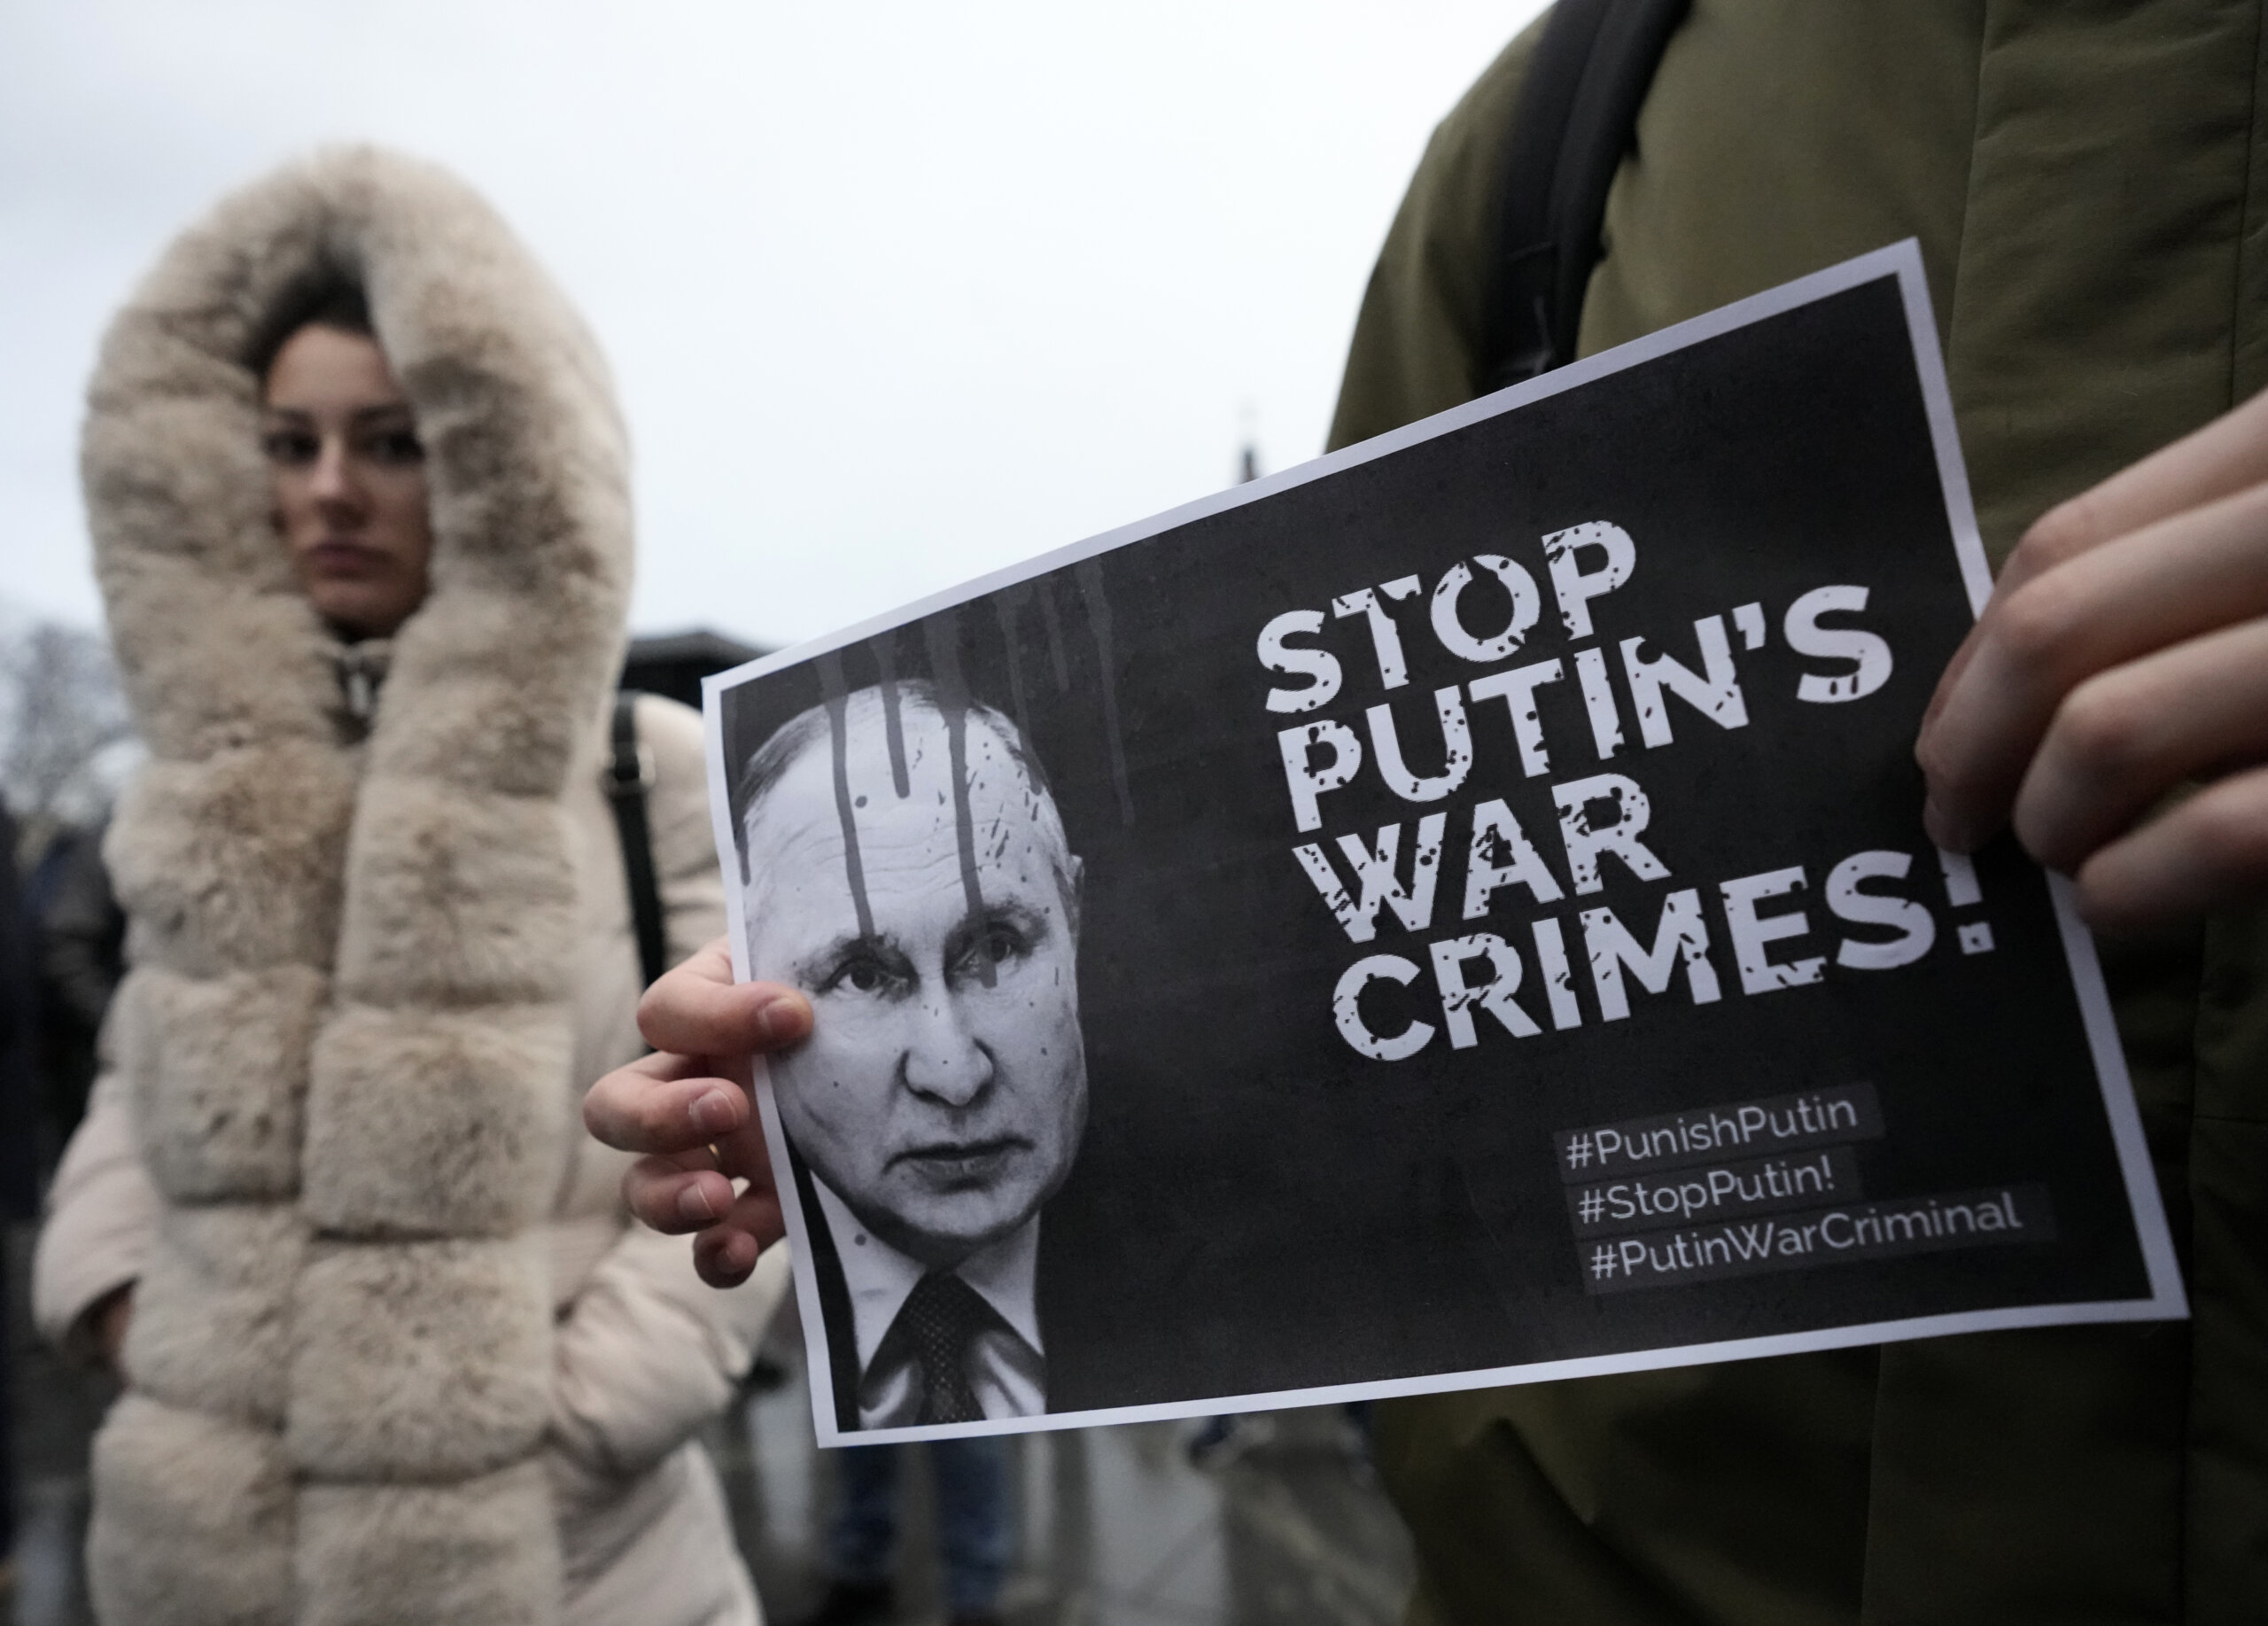 Ruski Insajder: Kako Kremlj organizuje pro-Putinove akcije u Nemačkoj i zašto neonacisti učestvuju u njima? 2